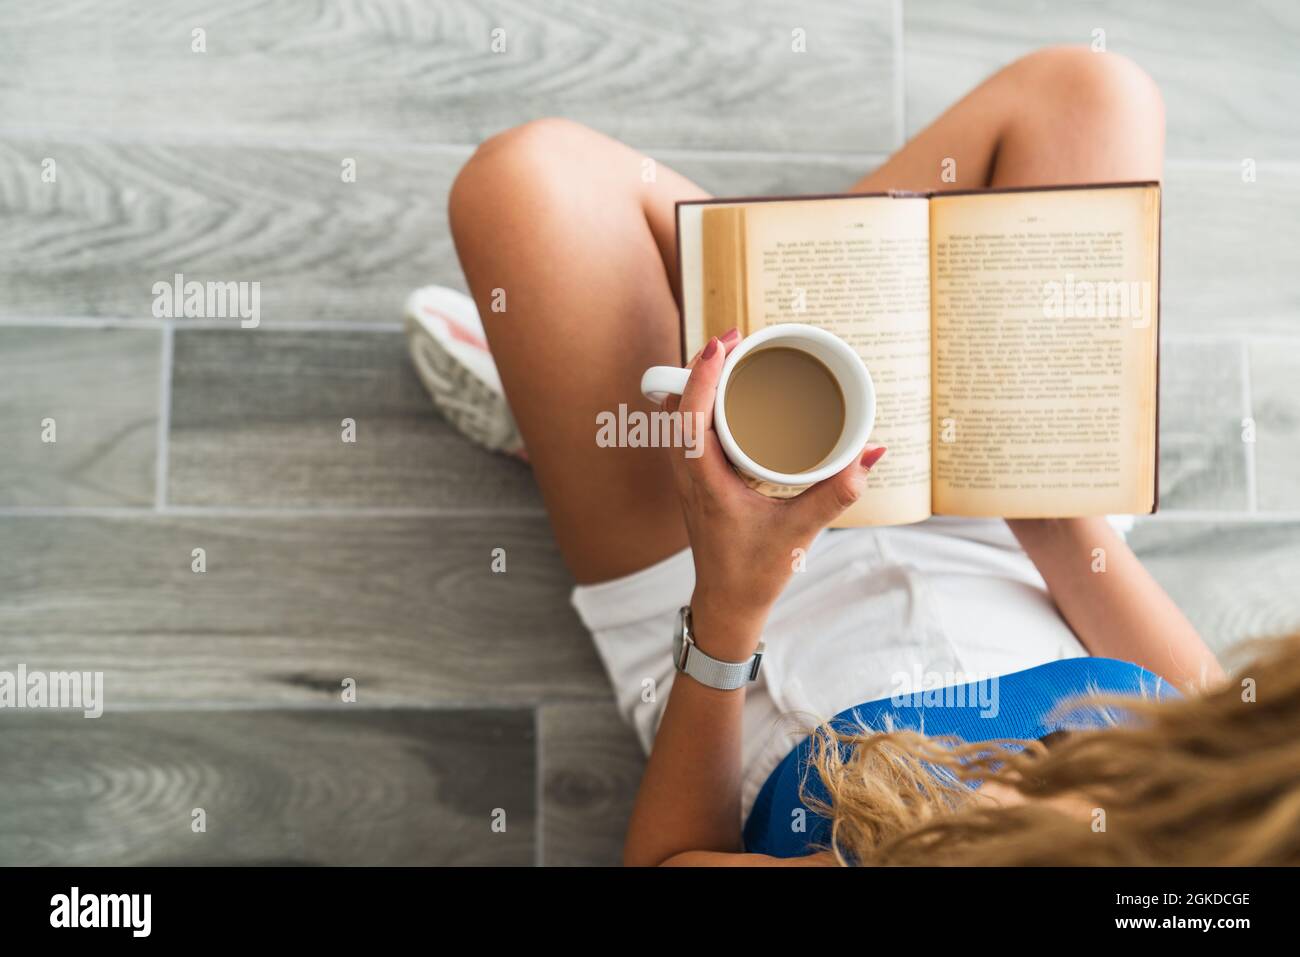 La giovane ragazza intellettuale si siede a terra e beve una tazza di caffè, mentre sta leggendo un libro. Foto di alta qualità Foto Stock